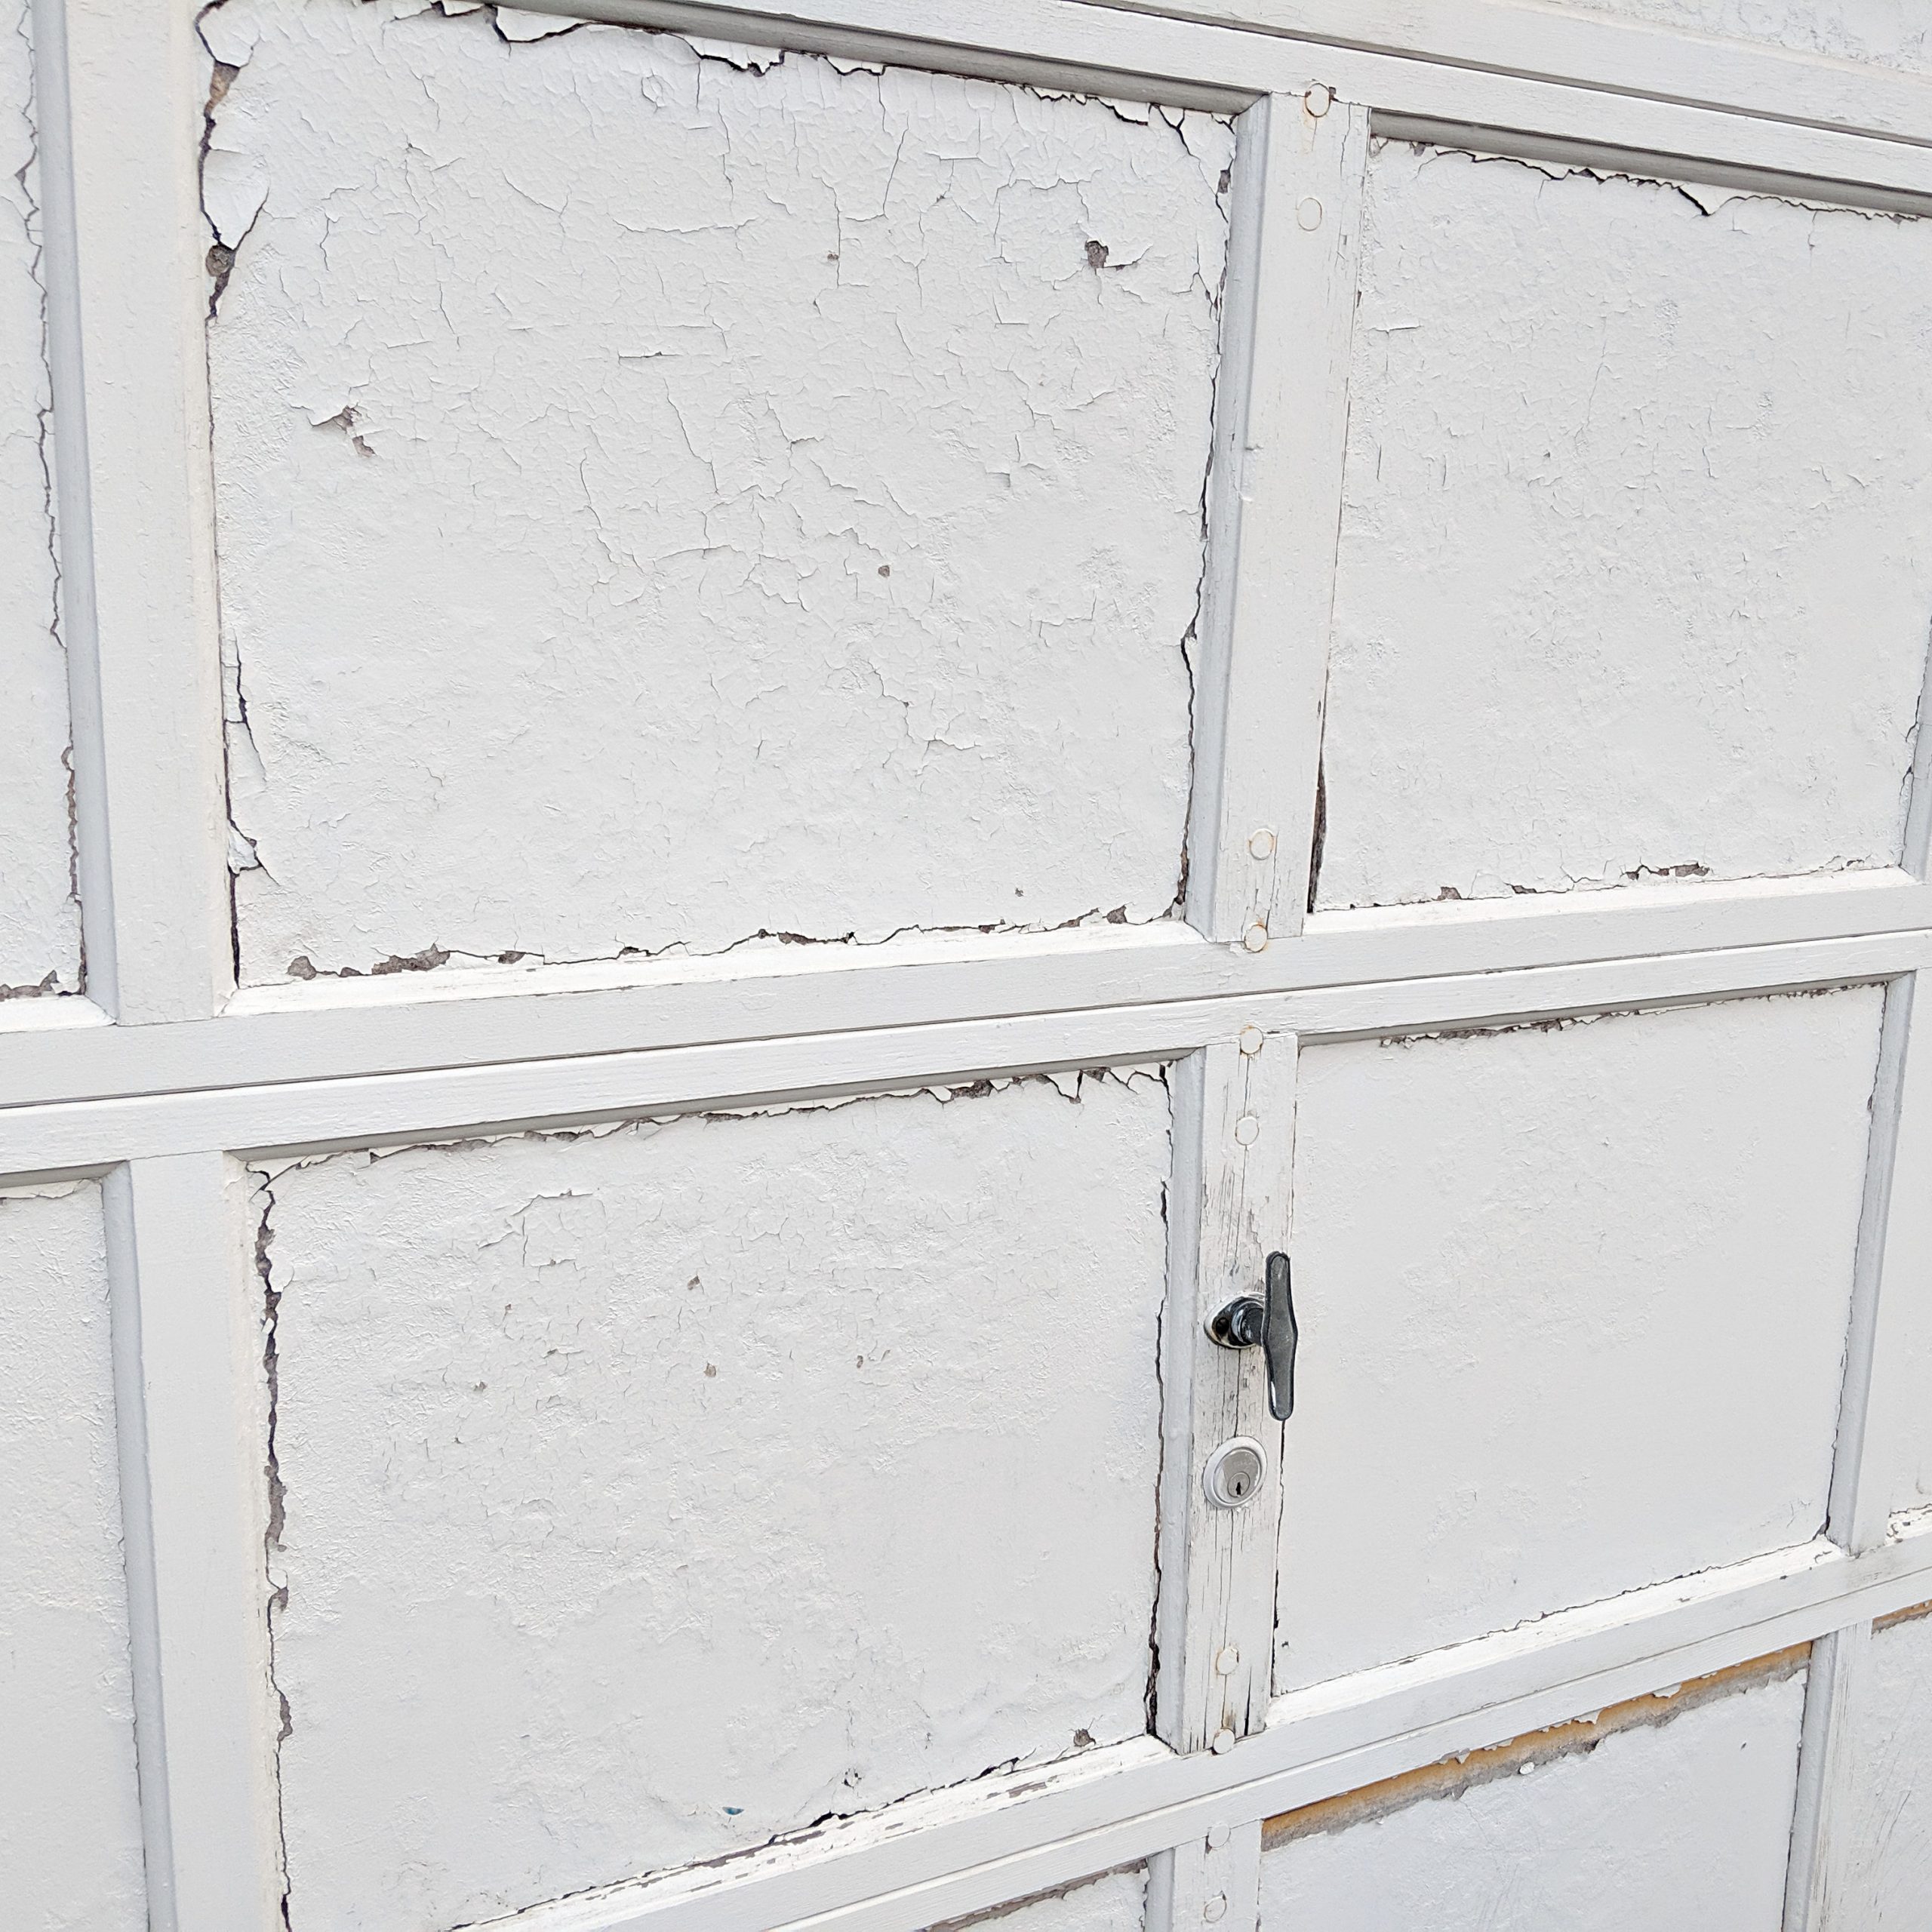 How To Paint A Garage Door Diy, How To Paint Inside Of Garage Door Opener